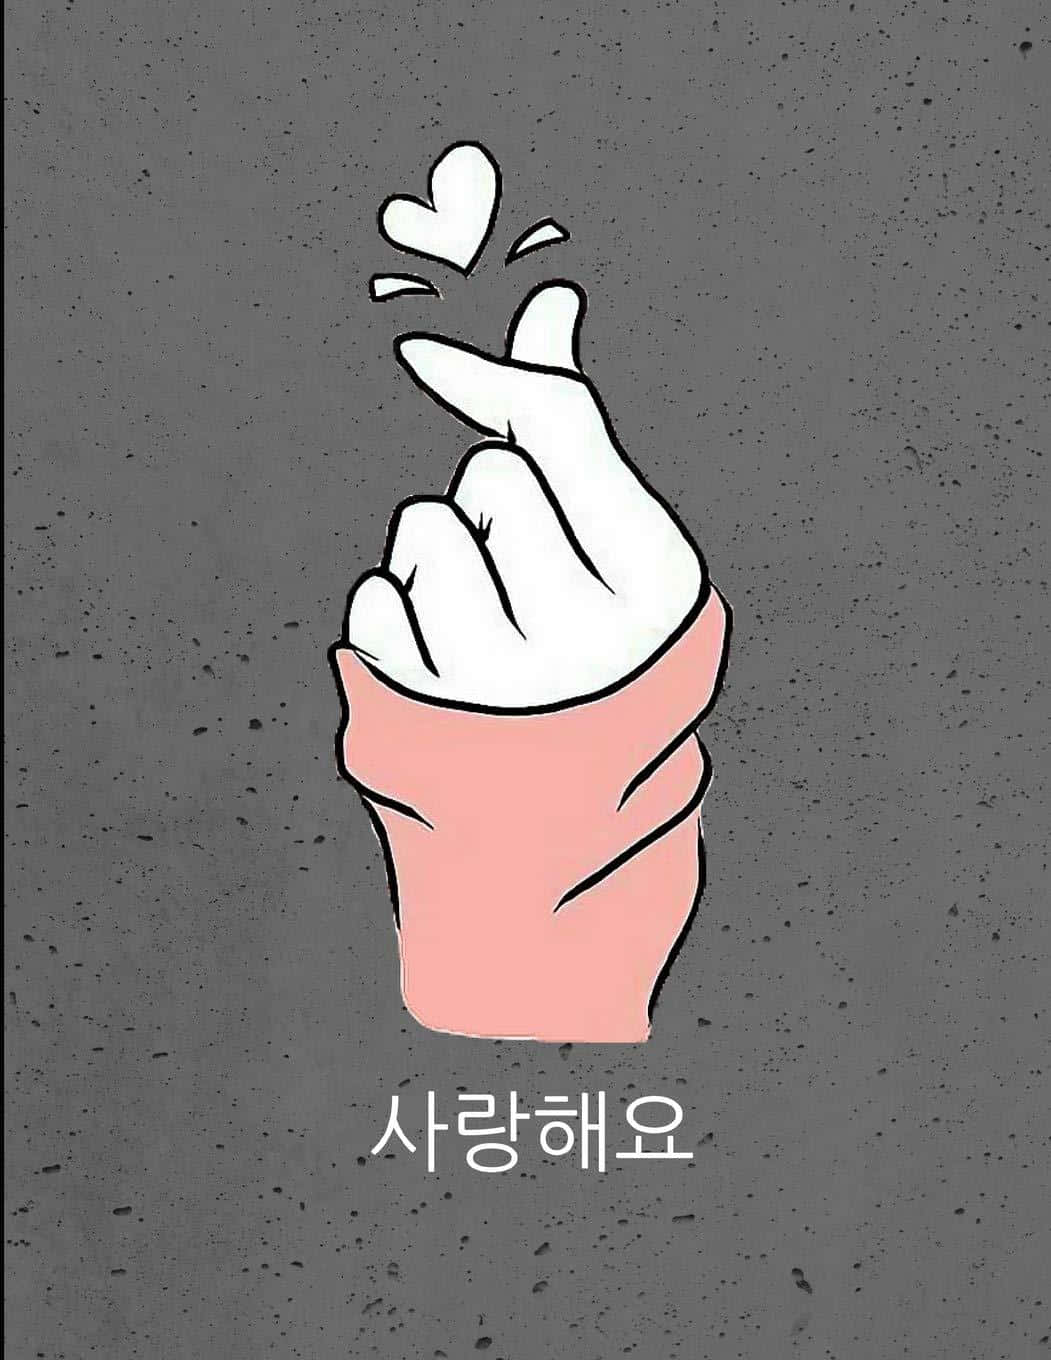 Bts Finger Heart Korean Saranghaeyo